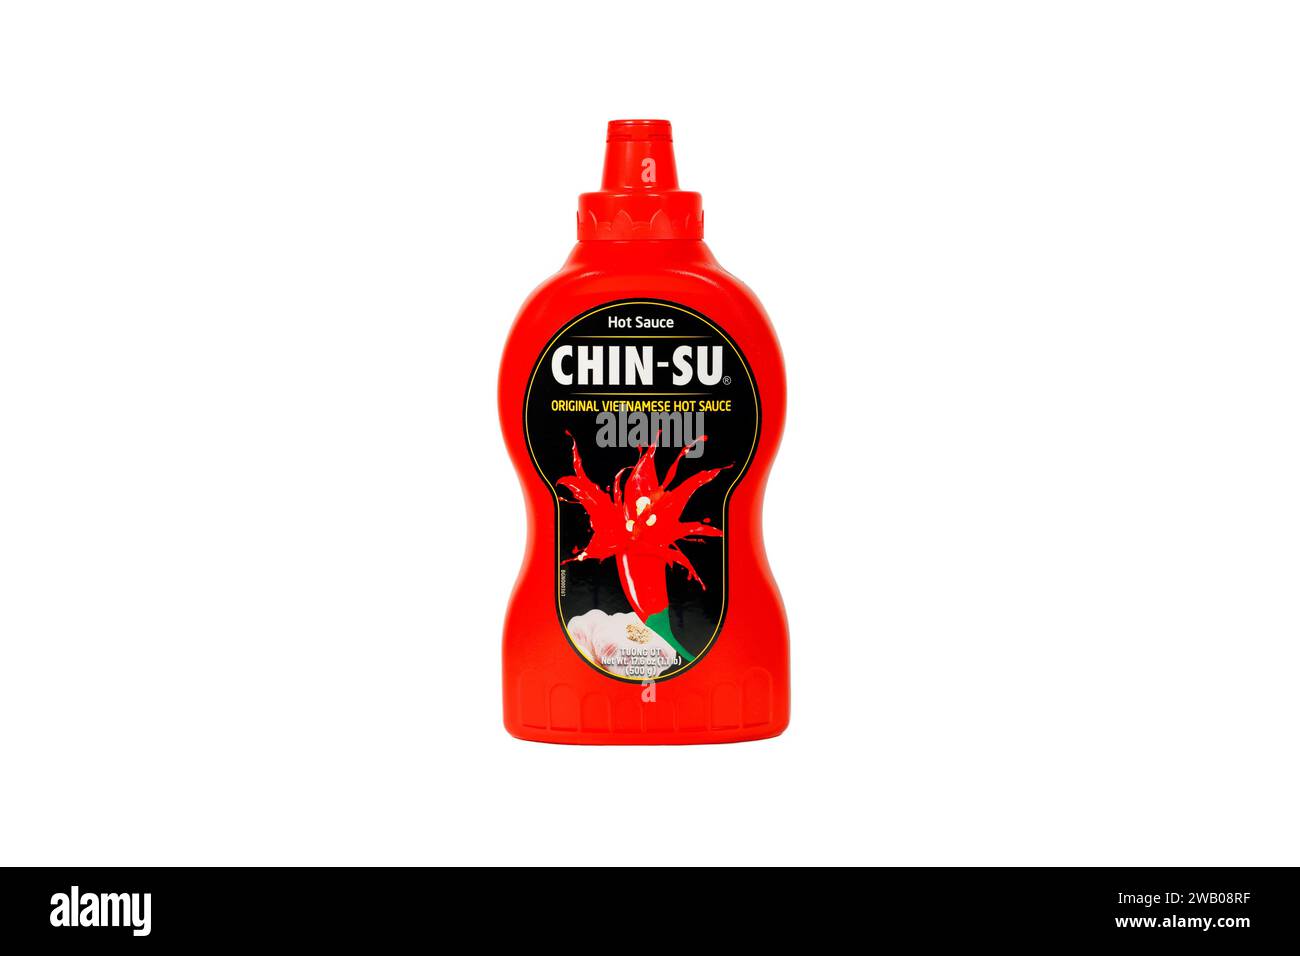 Une bouteille de sauce piquante vietnamienne Chin-su tương ớt est isolée sur fond blanc. image découpée pour illustration et utilisation éditoriale. Banque D'Images